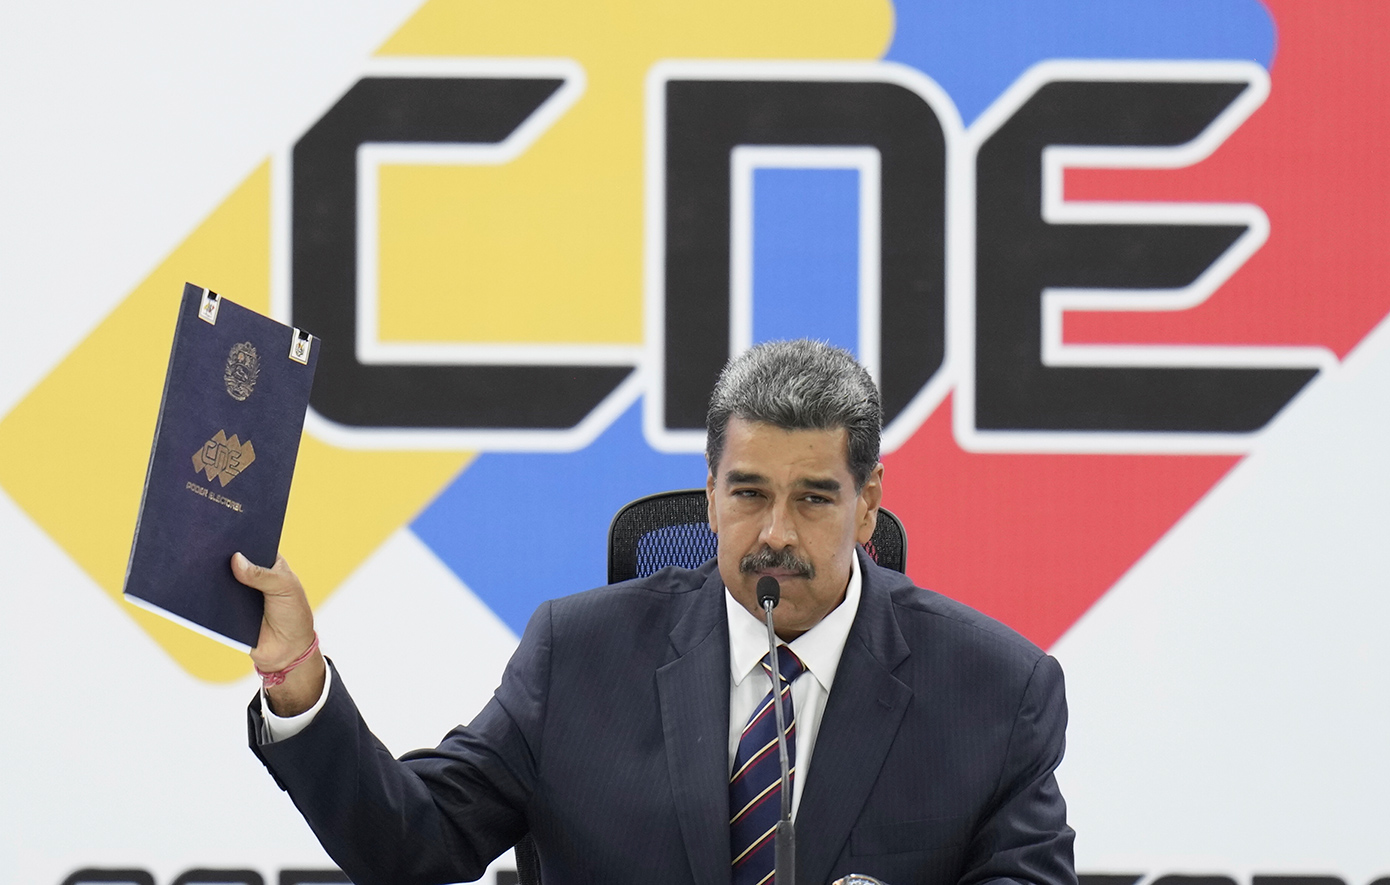 Βενεζουέλα: Ο Μαδούρο ανακηρύχθηκε νικητής των εκλογών και κατήγγειλε «πραξικόπημα» στη χώρα